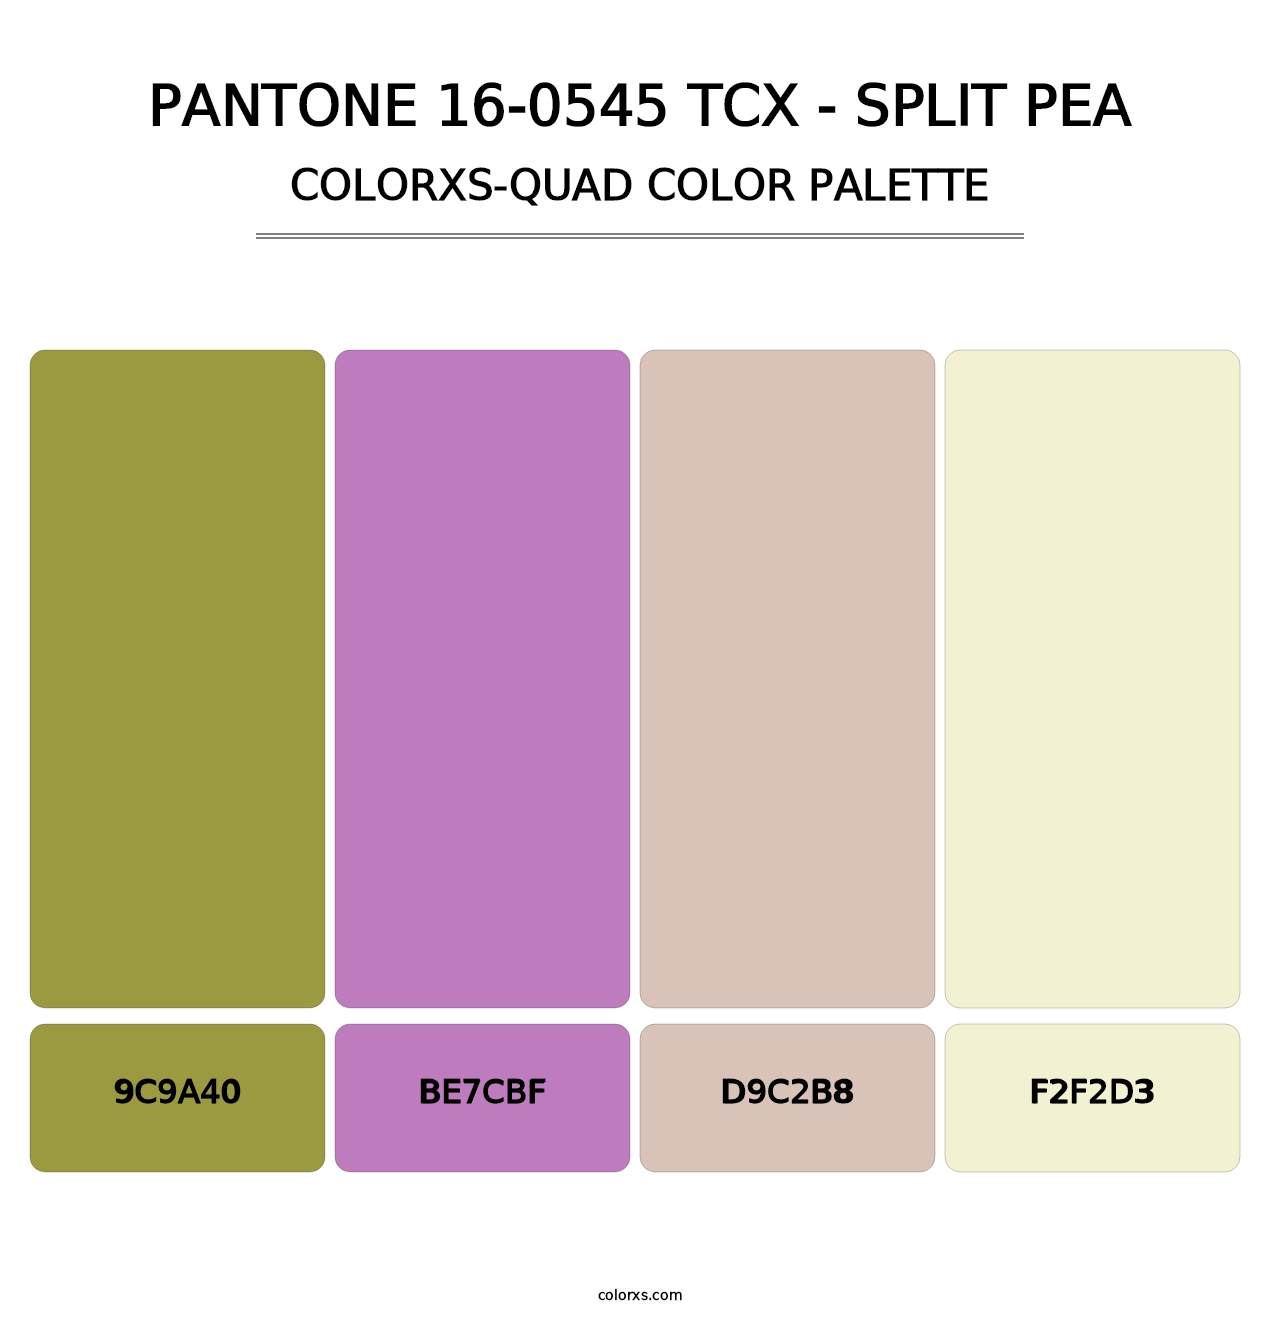 PANTONE 16-0545 TCX - Split Pea - Colorxs Quad Palette